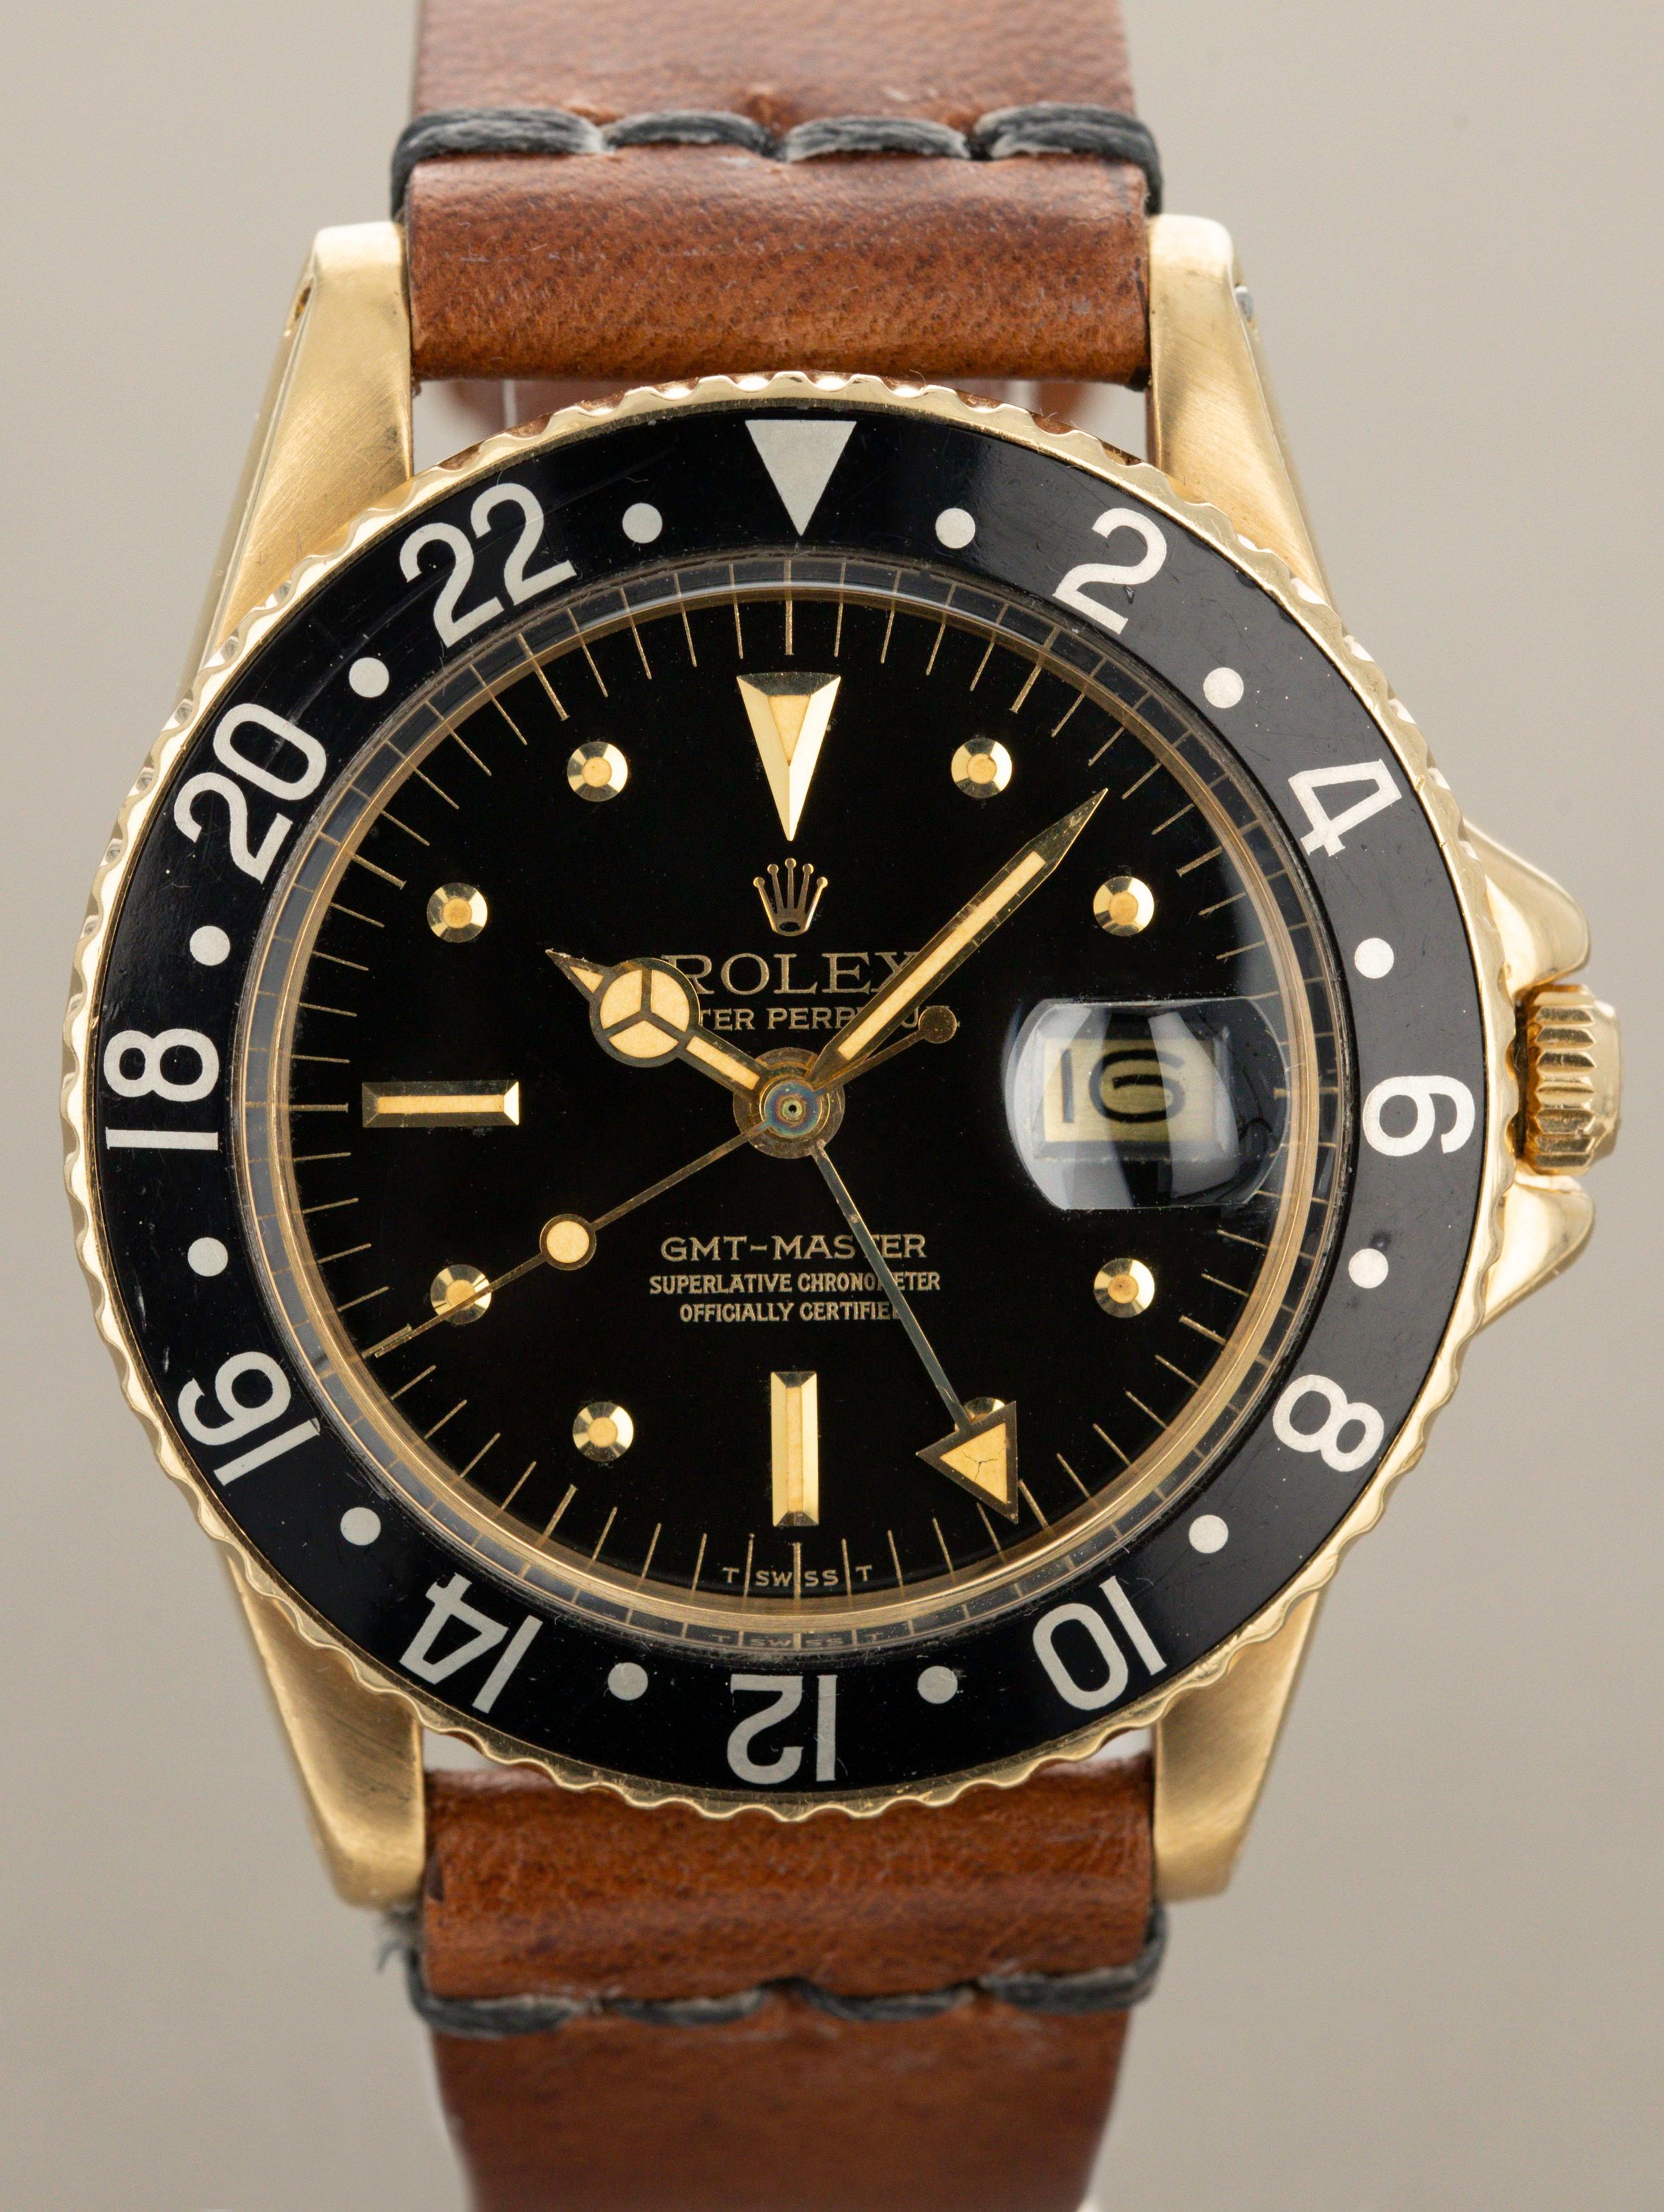 Rolex GMT-Master Ref. 1675 - Original Owner Watch